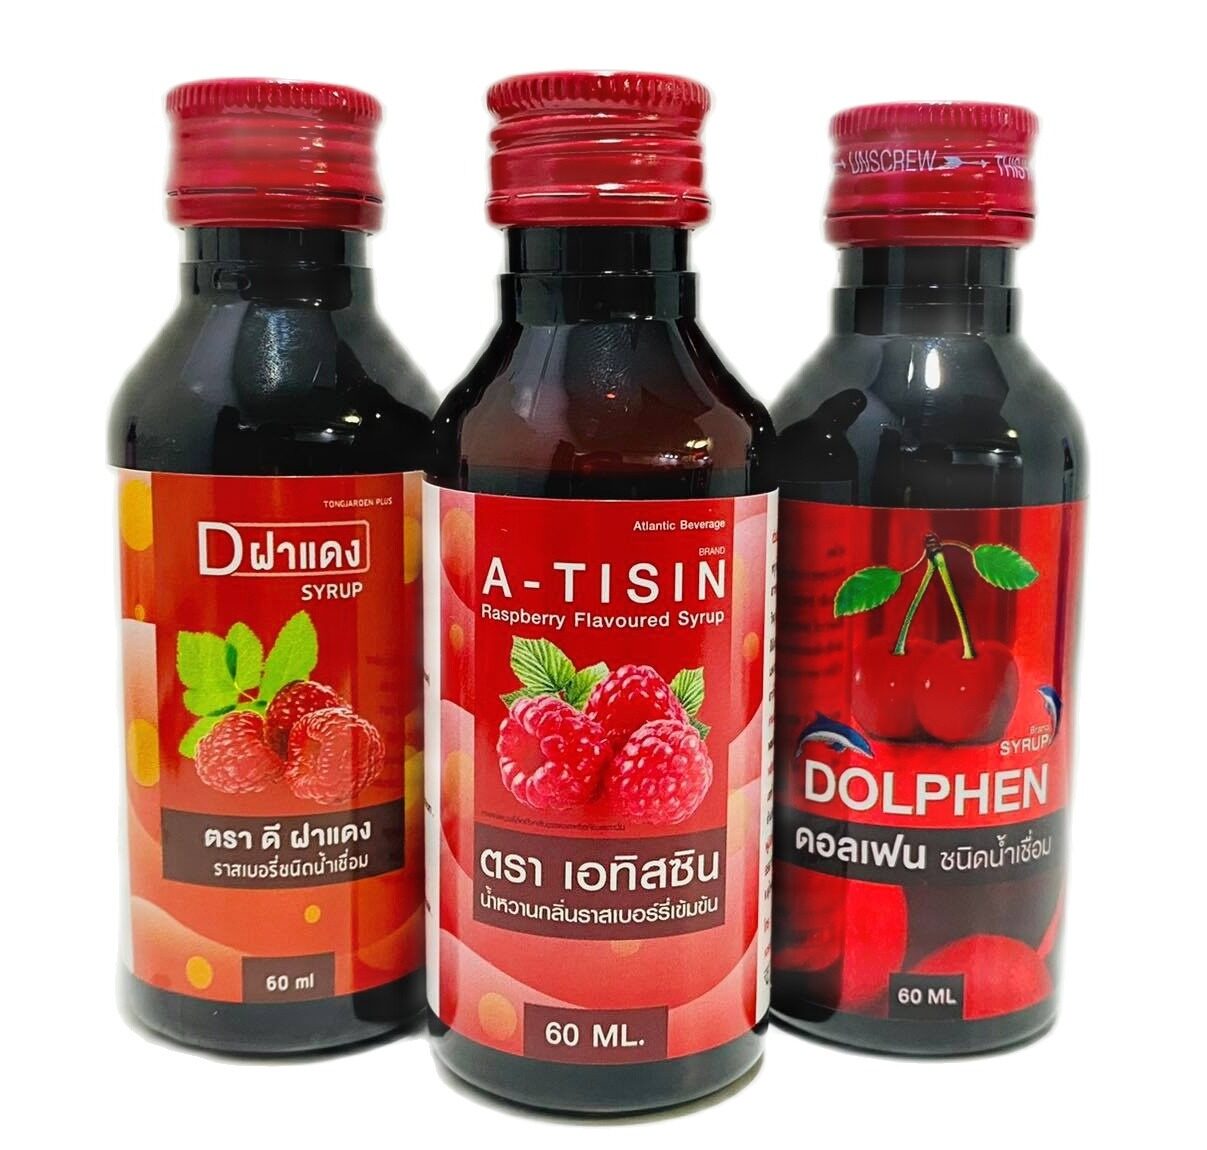 A-Tisin-Dฝาแดง-Dolphen Syrup น้ำหวานเข้มข้นกลิ่นผลไม้ 60ml. 3 ขวด